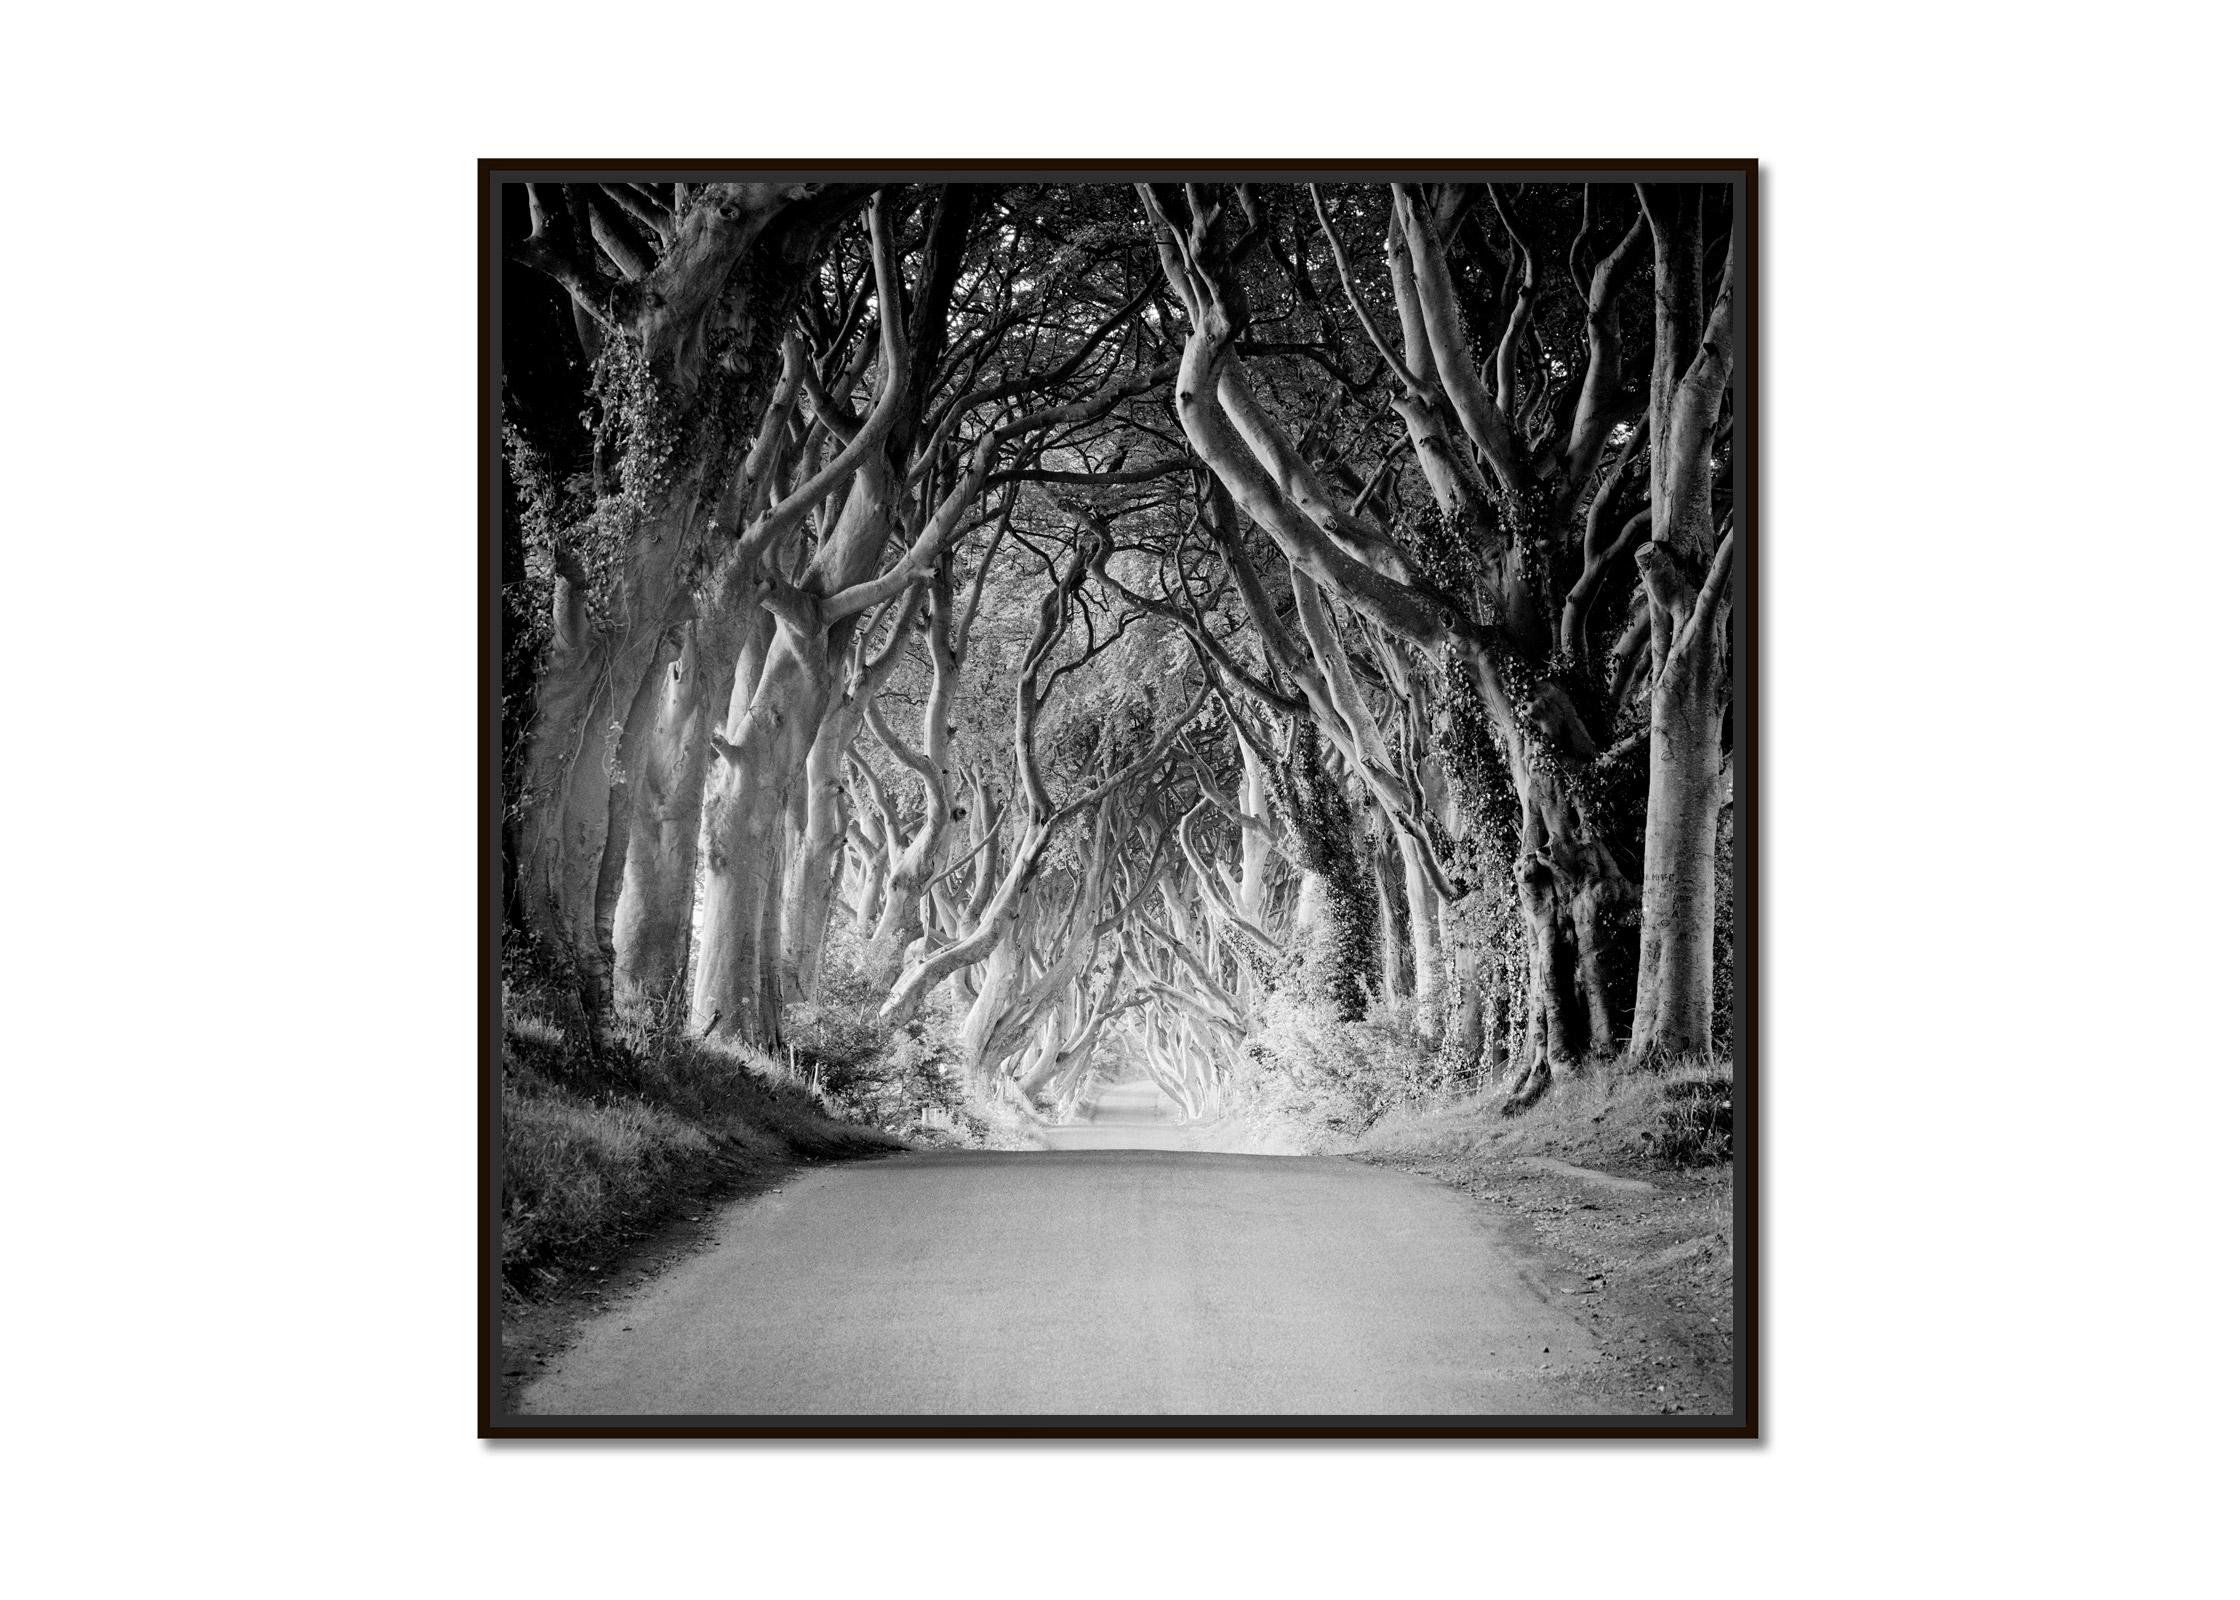 Dunkle Hölzer, Irland, Tree Avenue, Schwarz-Weiß-Kunst-Landschaftsfotografie – Photograph von Gerald Berghammer